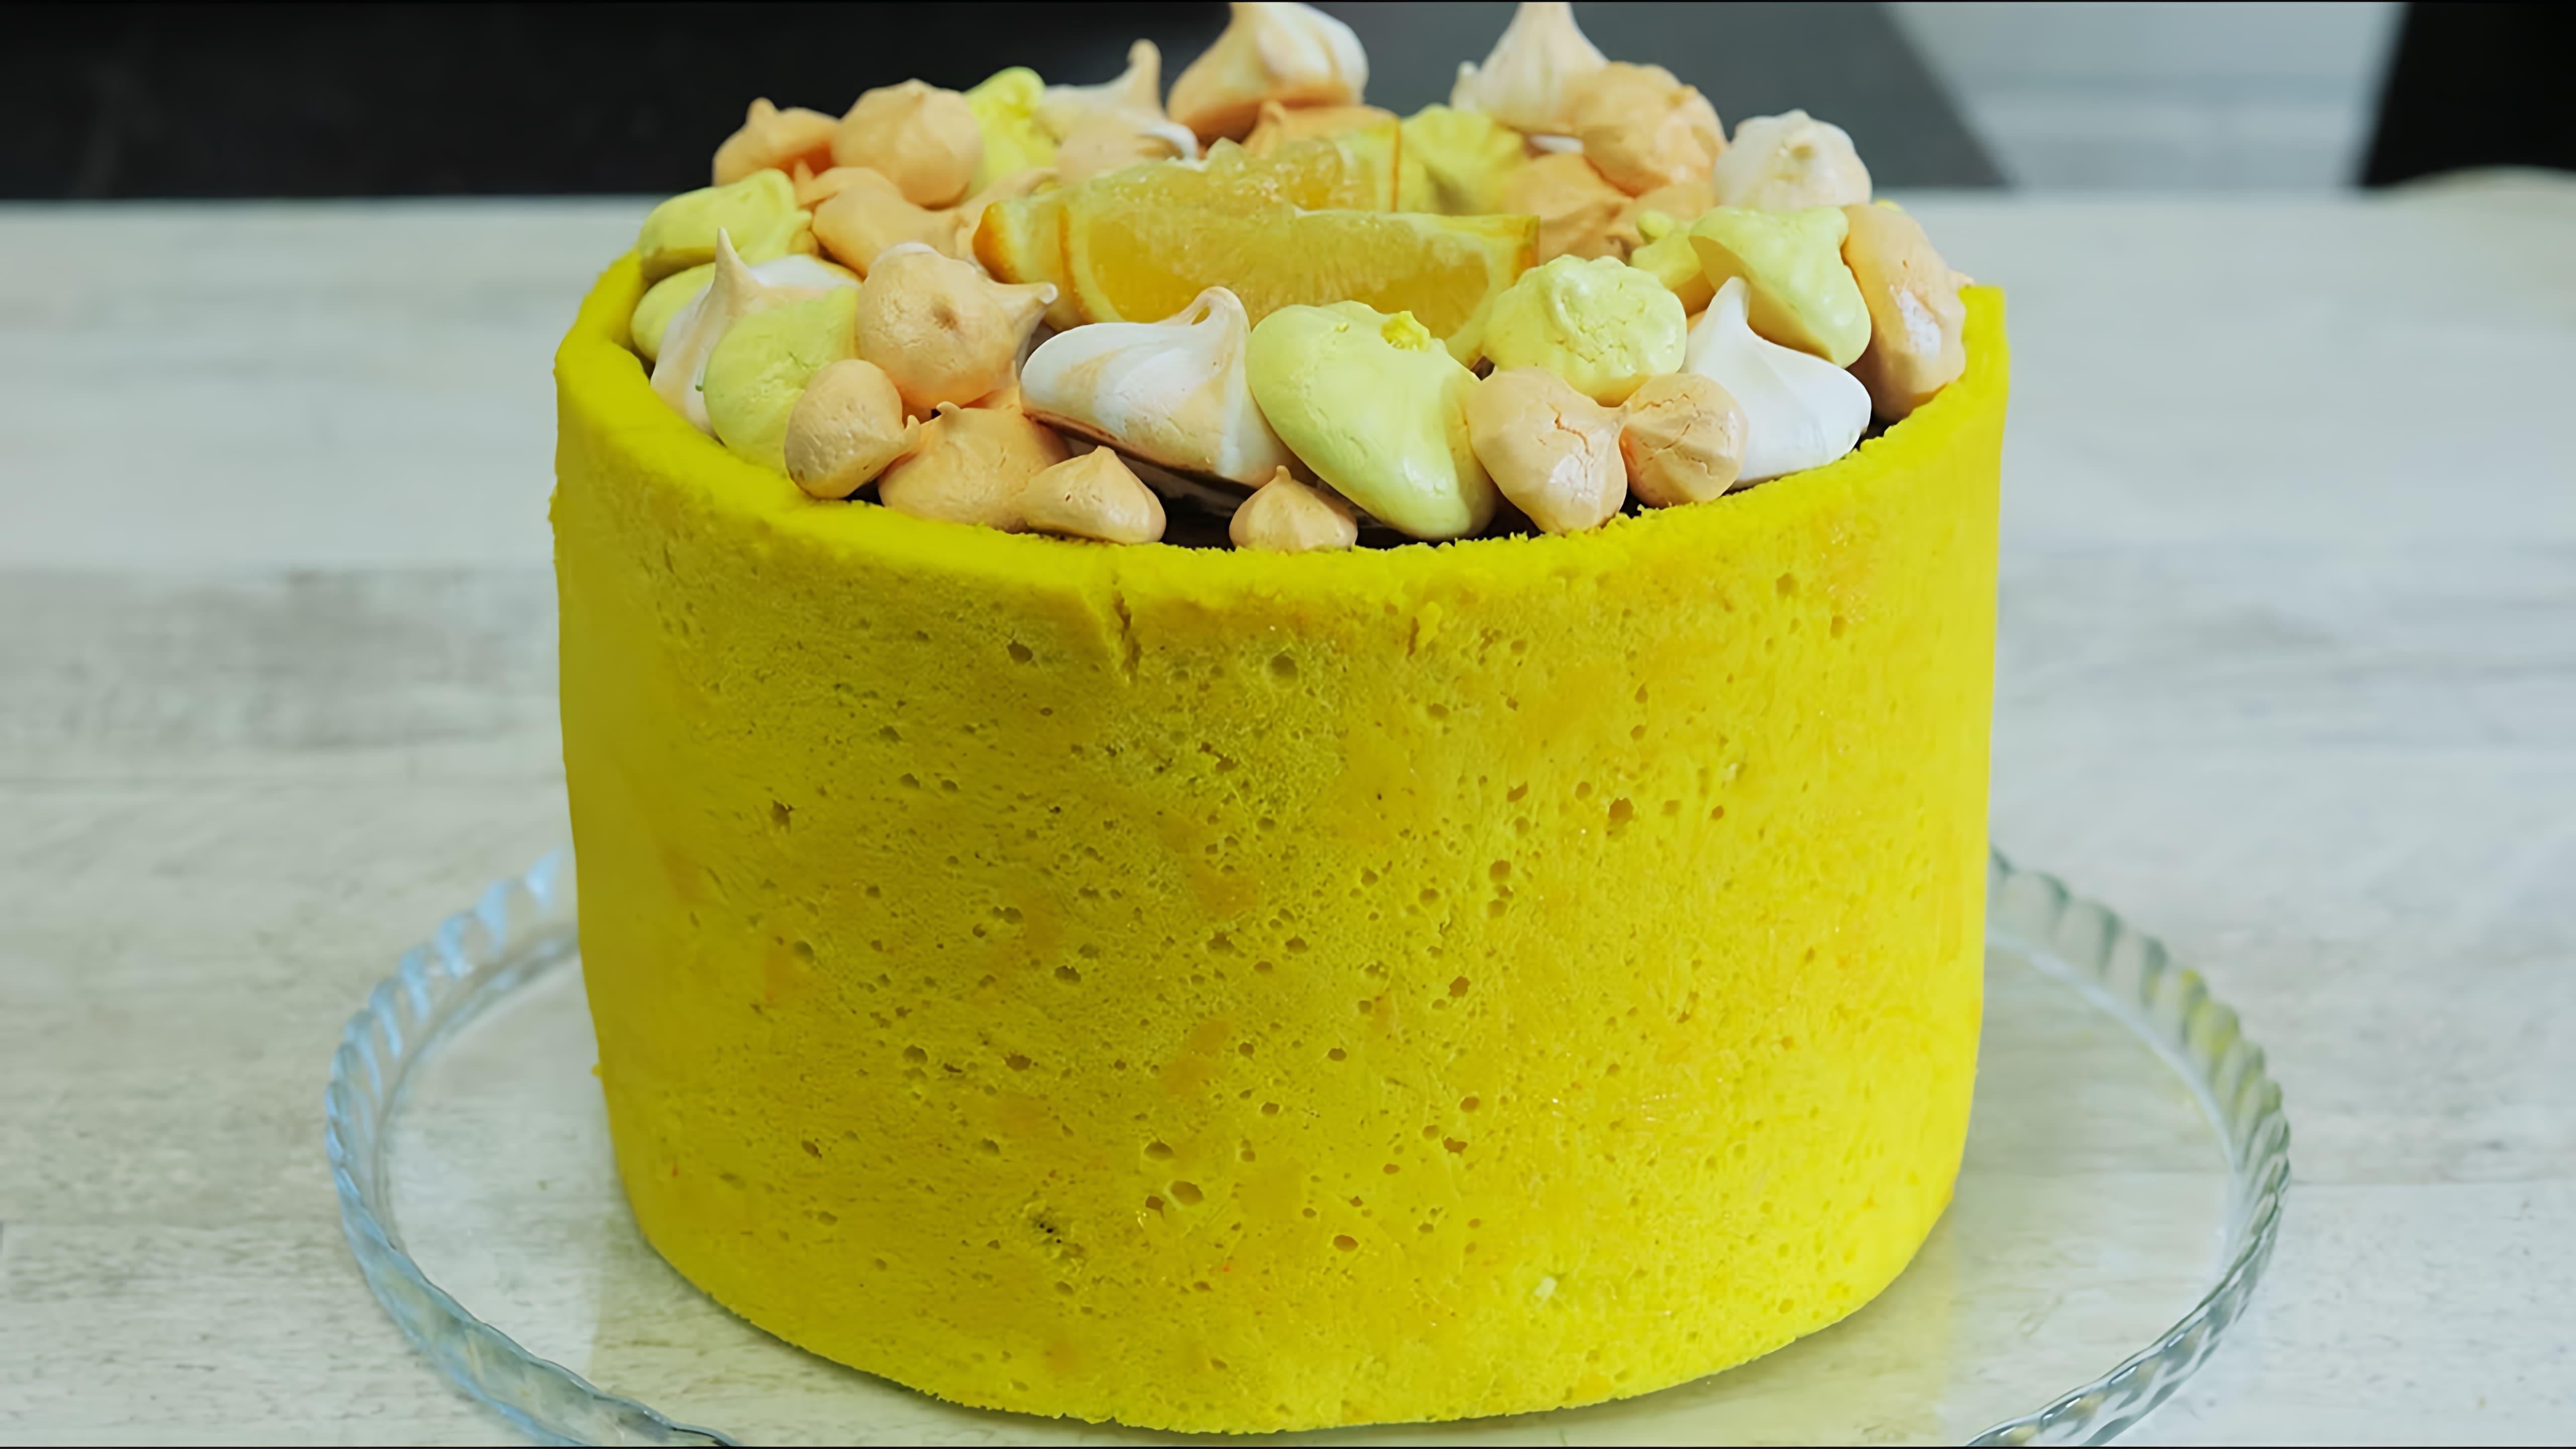 В этом видео демонстрируется процесс приготовления шоколадно-апельсинового торта с использованием японского заварного бисквита